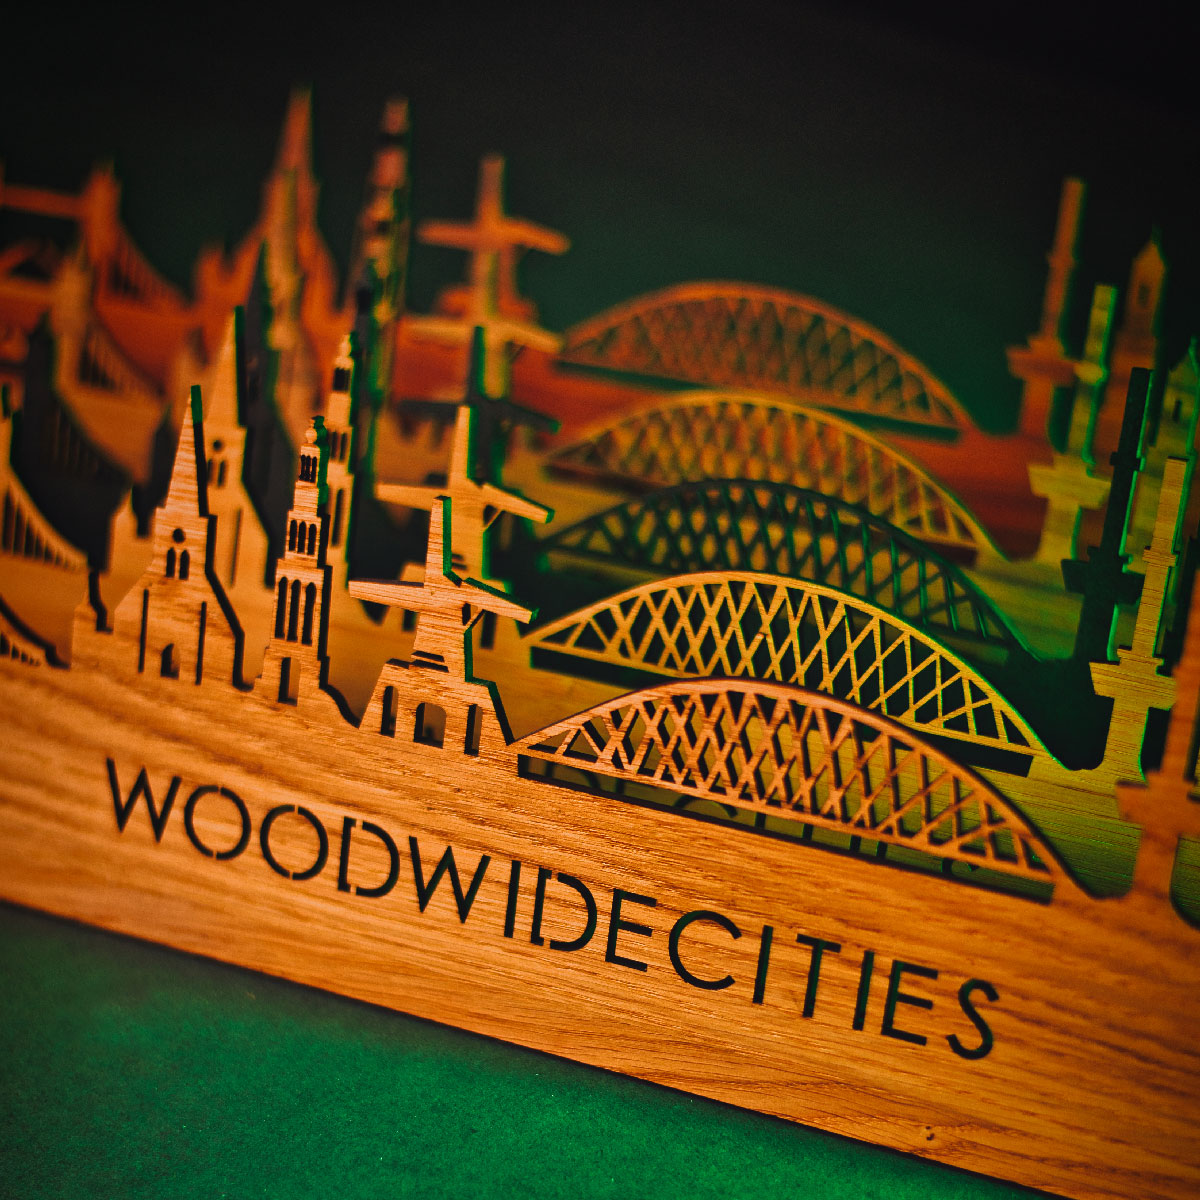 Skyline Klok Durham Eiken houten cadeau wanddecoratie relatiegeschenk van WoodWideCities